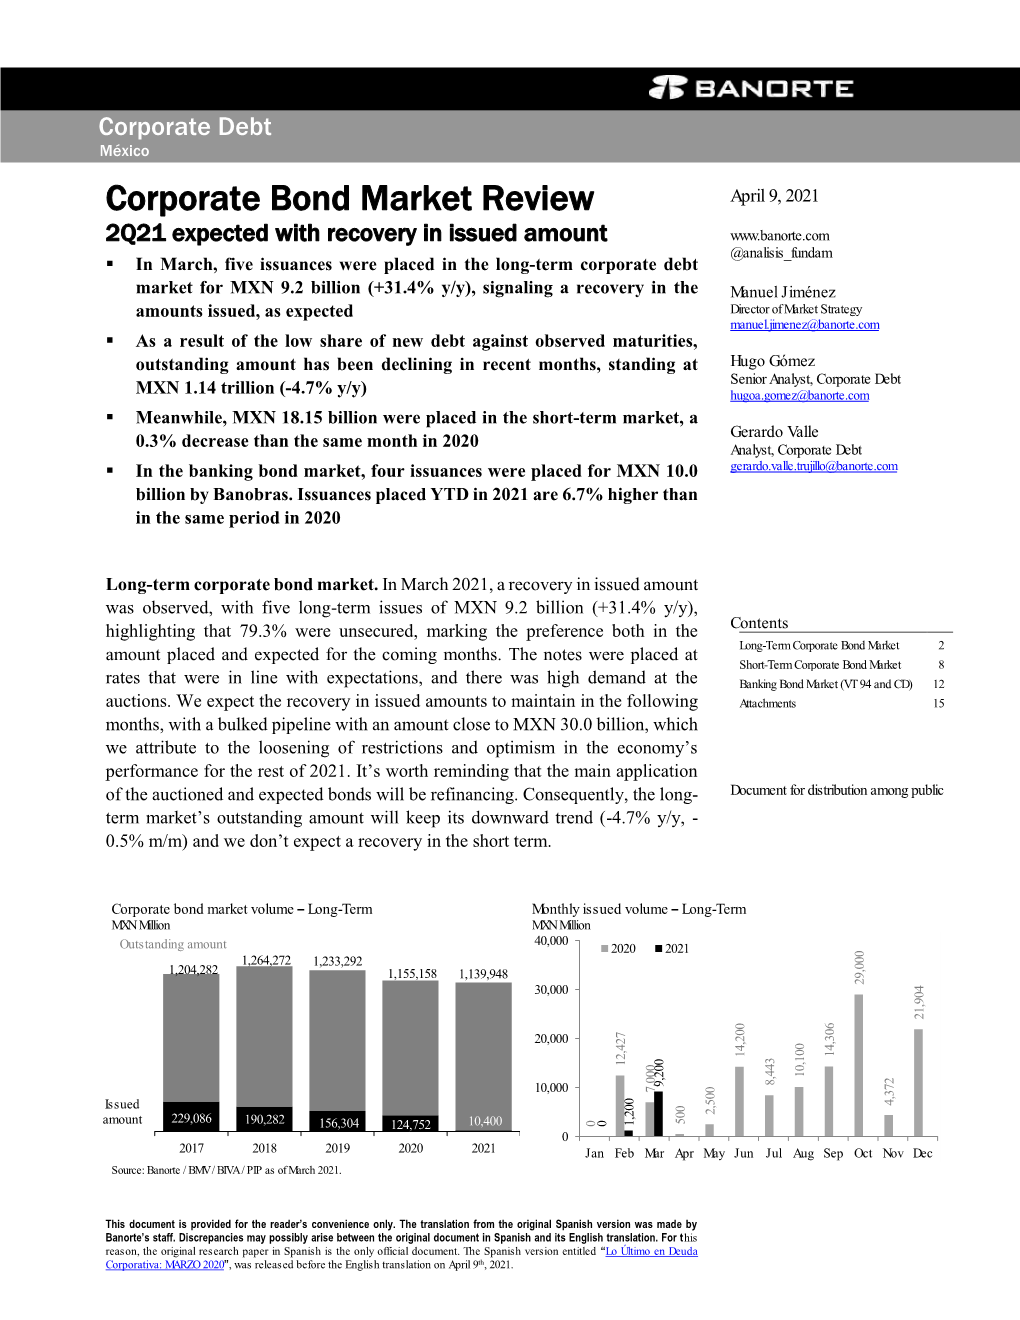 Corporate Bond Market Review April 9, 2021